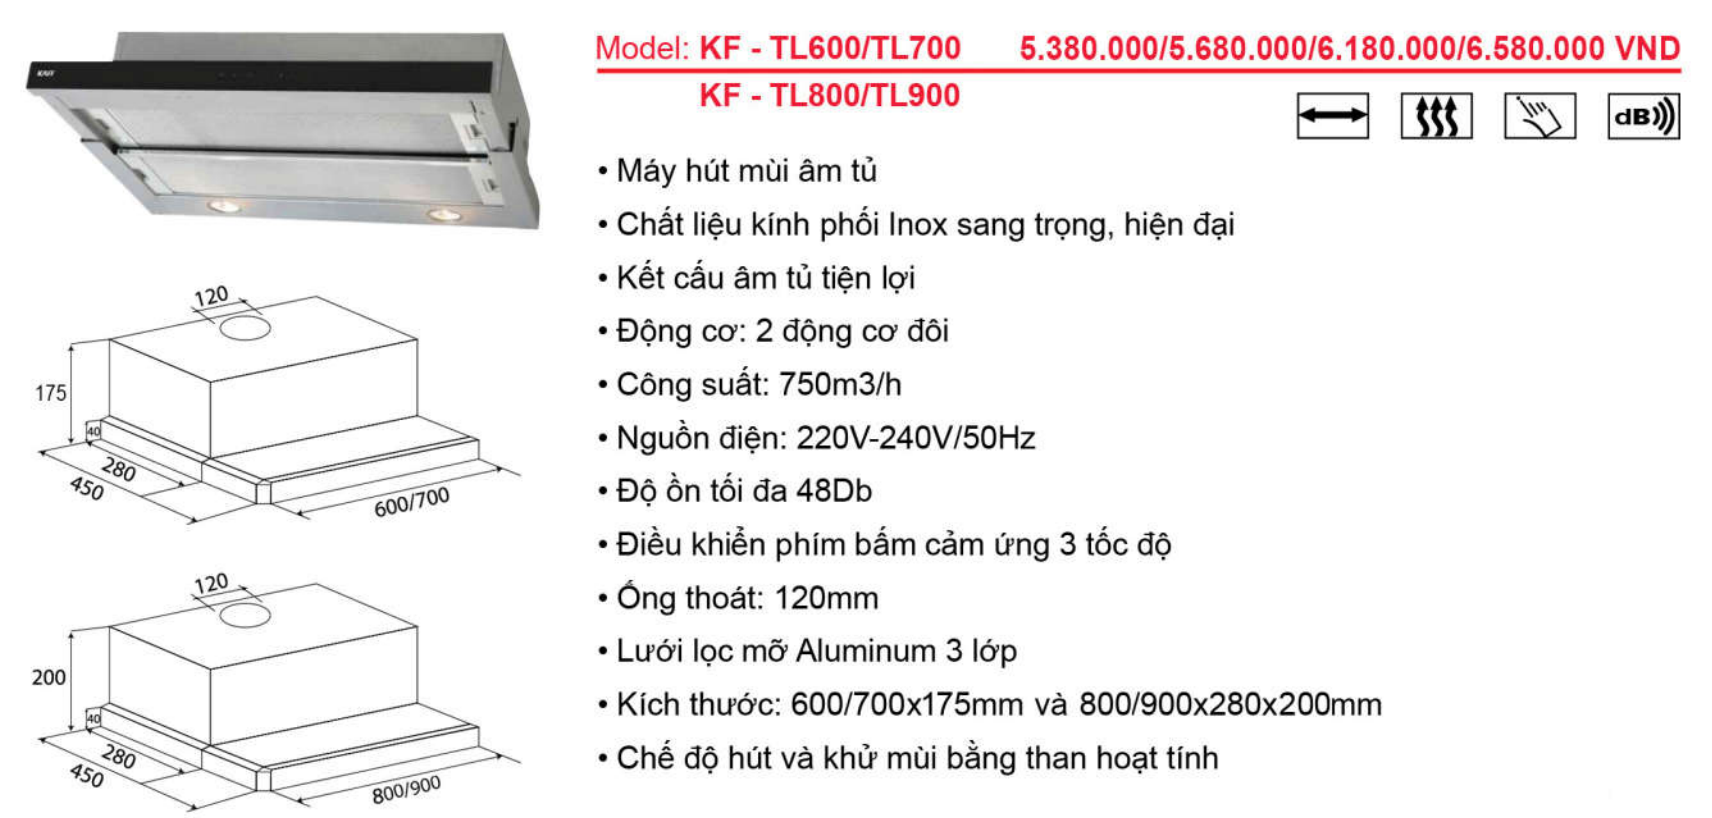 Máy hút khói, khử mùi âm tủ KAFF KF-TL700/KF-TL70H - Sản phẩm chính hãng